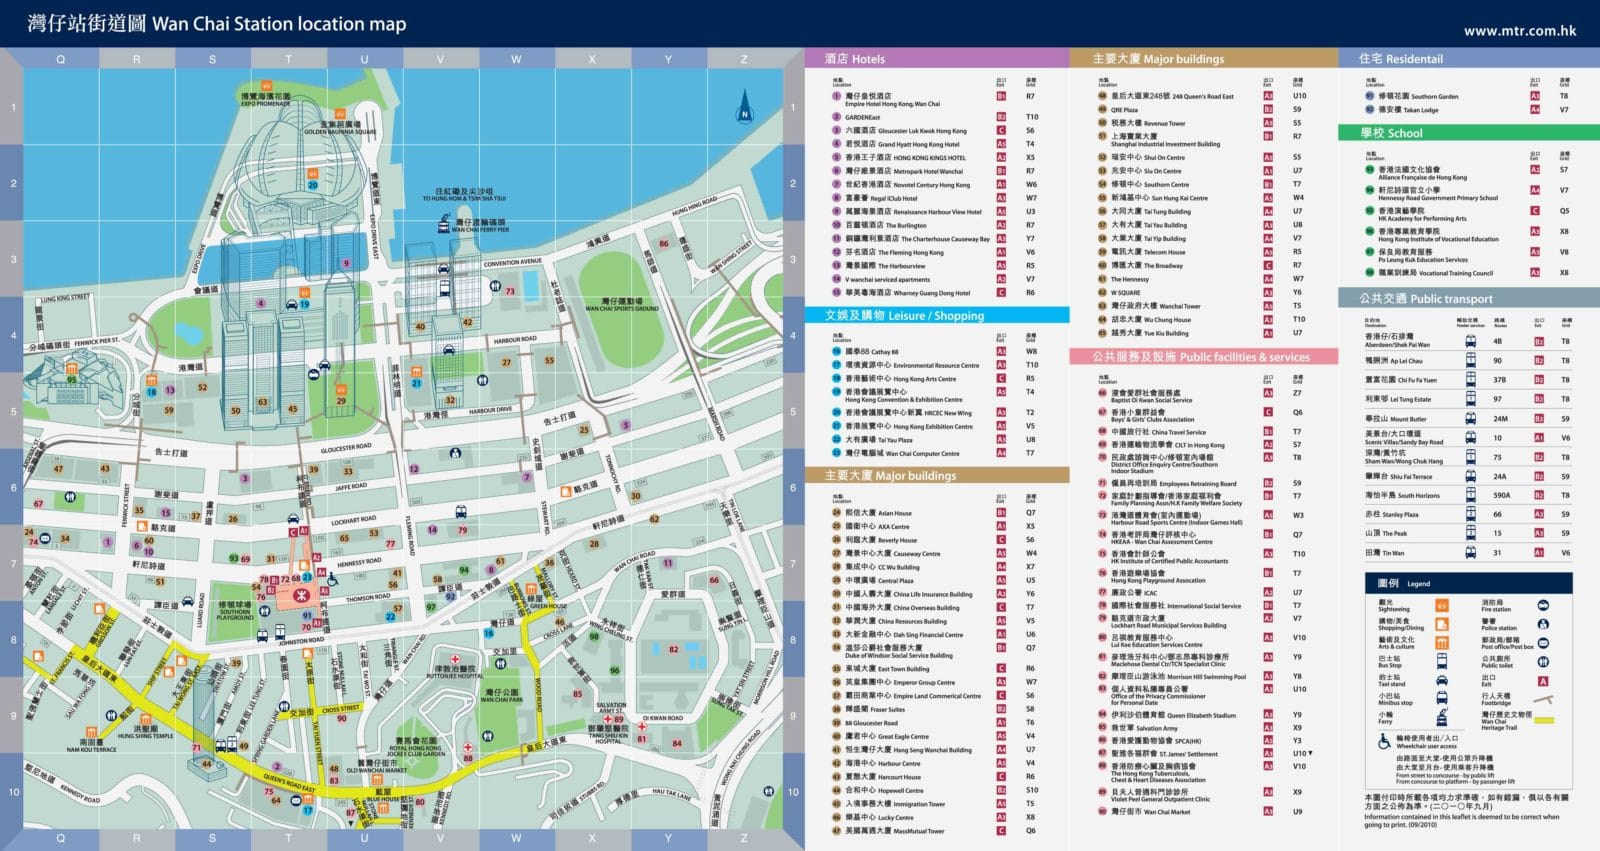 香港:湾仔地铁站区域图2012-2013